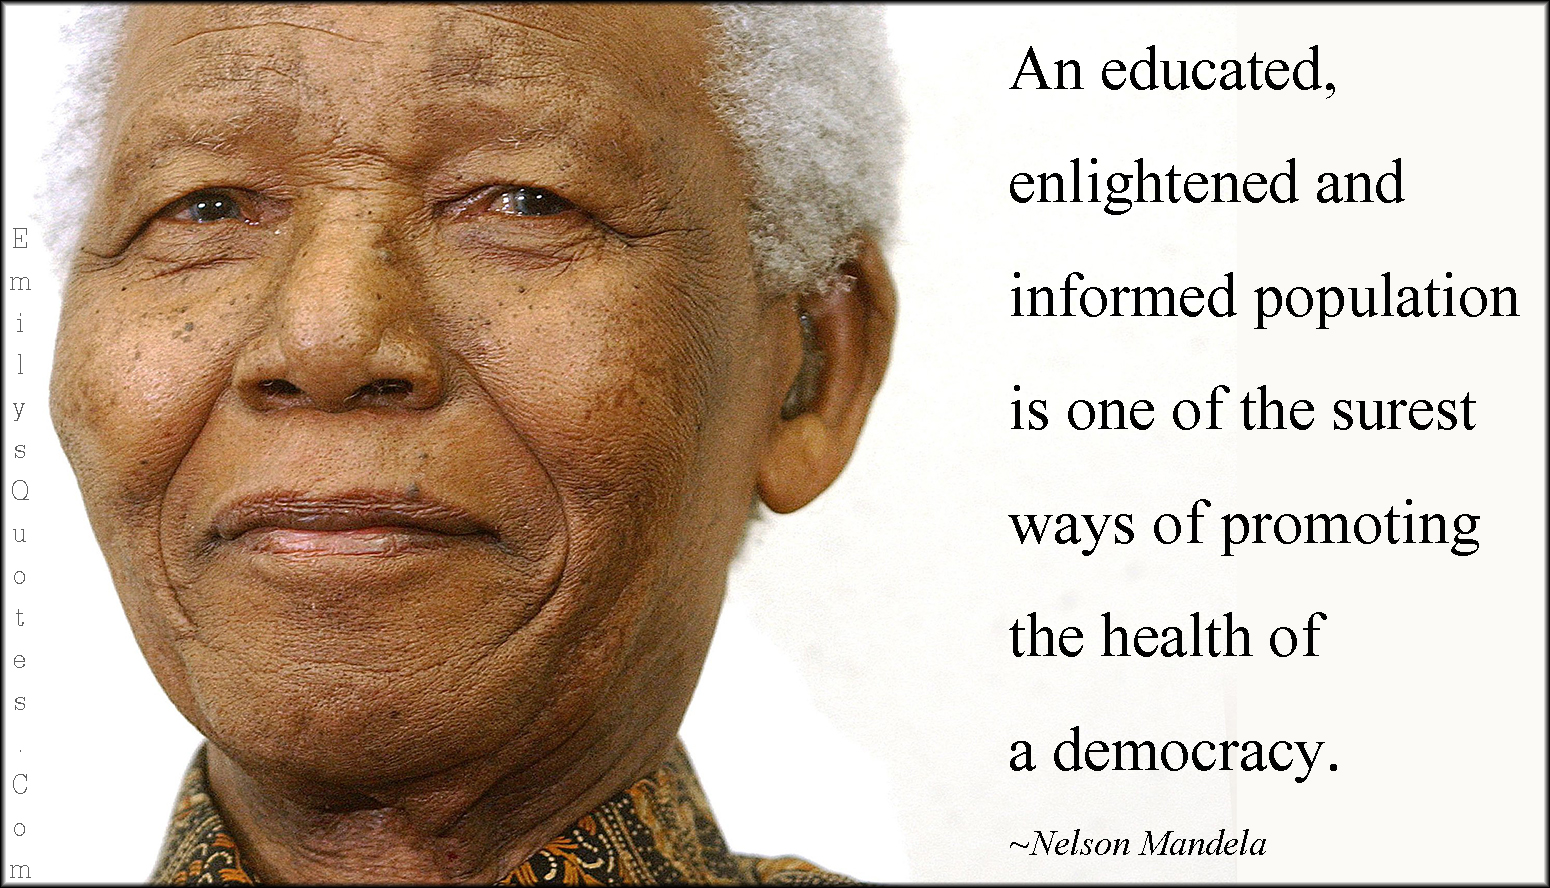 Mandela On Education Quotes. QuotesGram